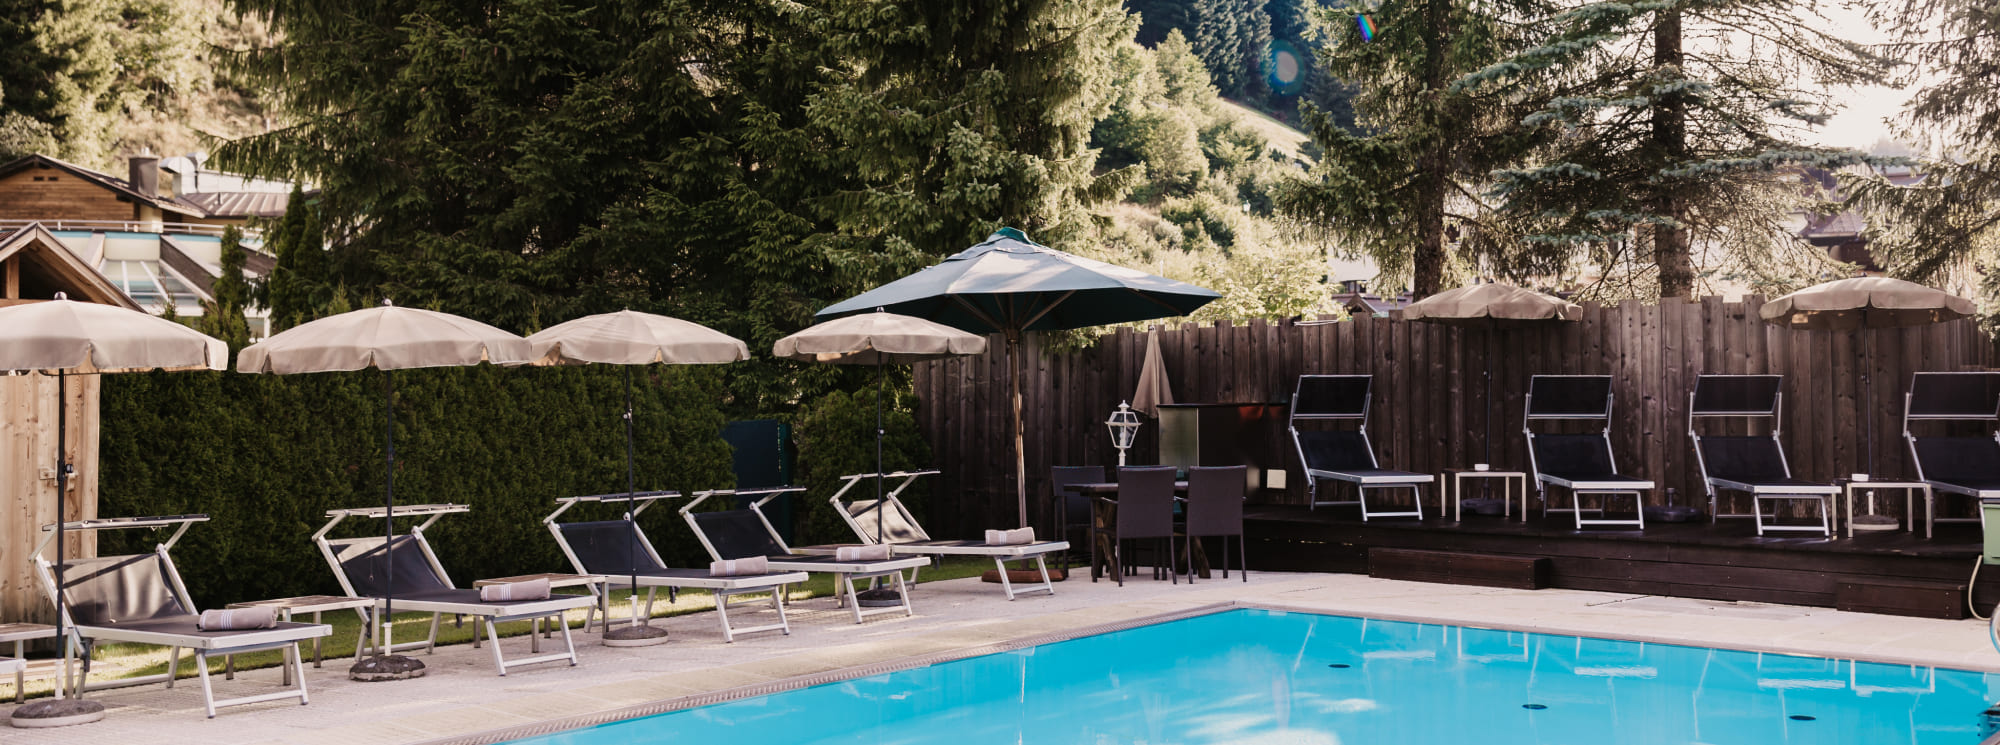 Hotel mit Frei-Schwimmbad im Sommerurlaub in Filzmoos